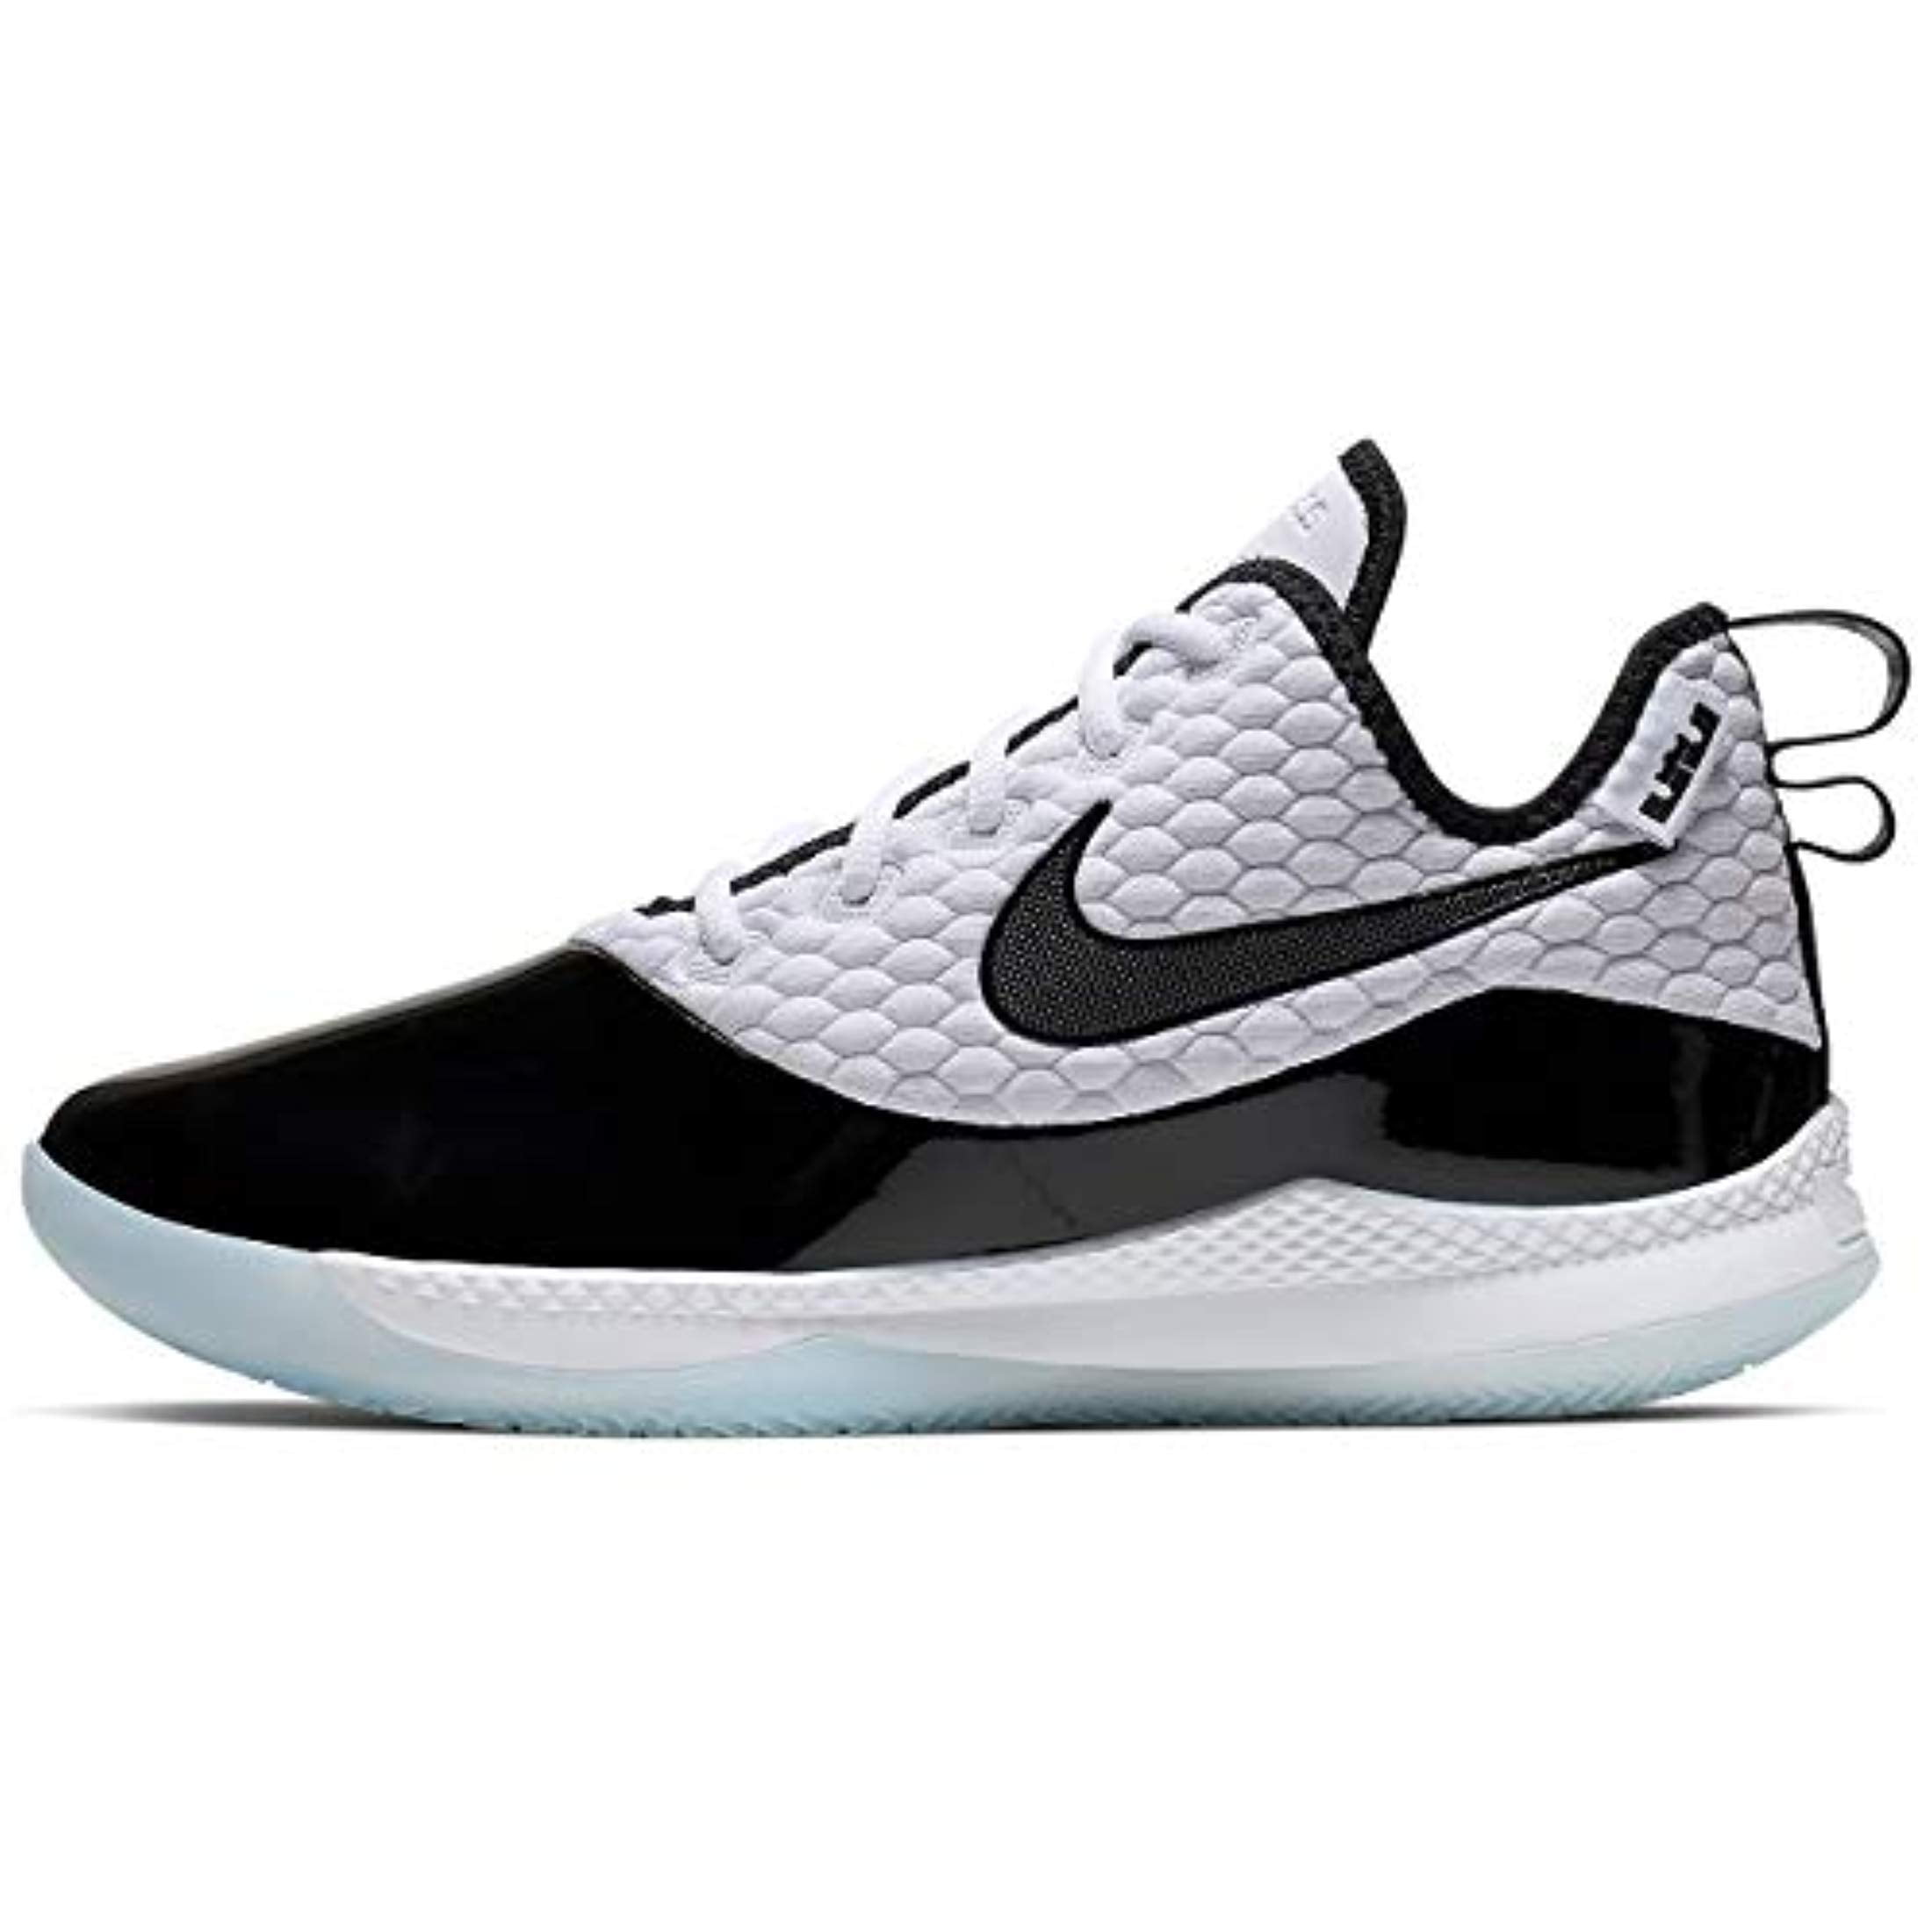 lebron witness iii grey/black men's basketball shoe